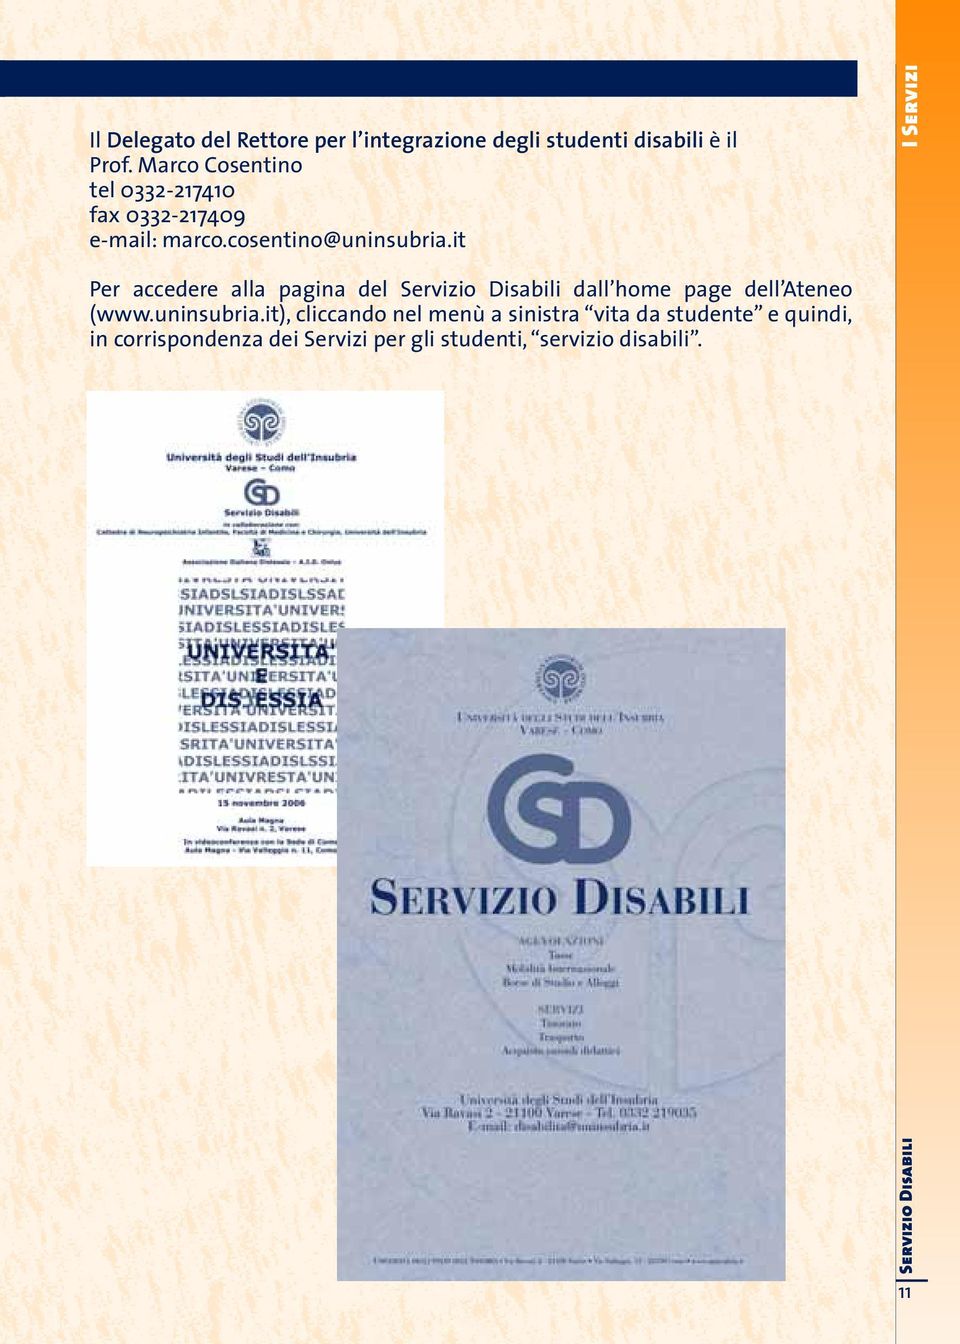 it I Servizi Per accedere alla pagina del Servizio Disabili dall home page dell Ateneo (www.uninsubria.